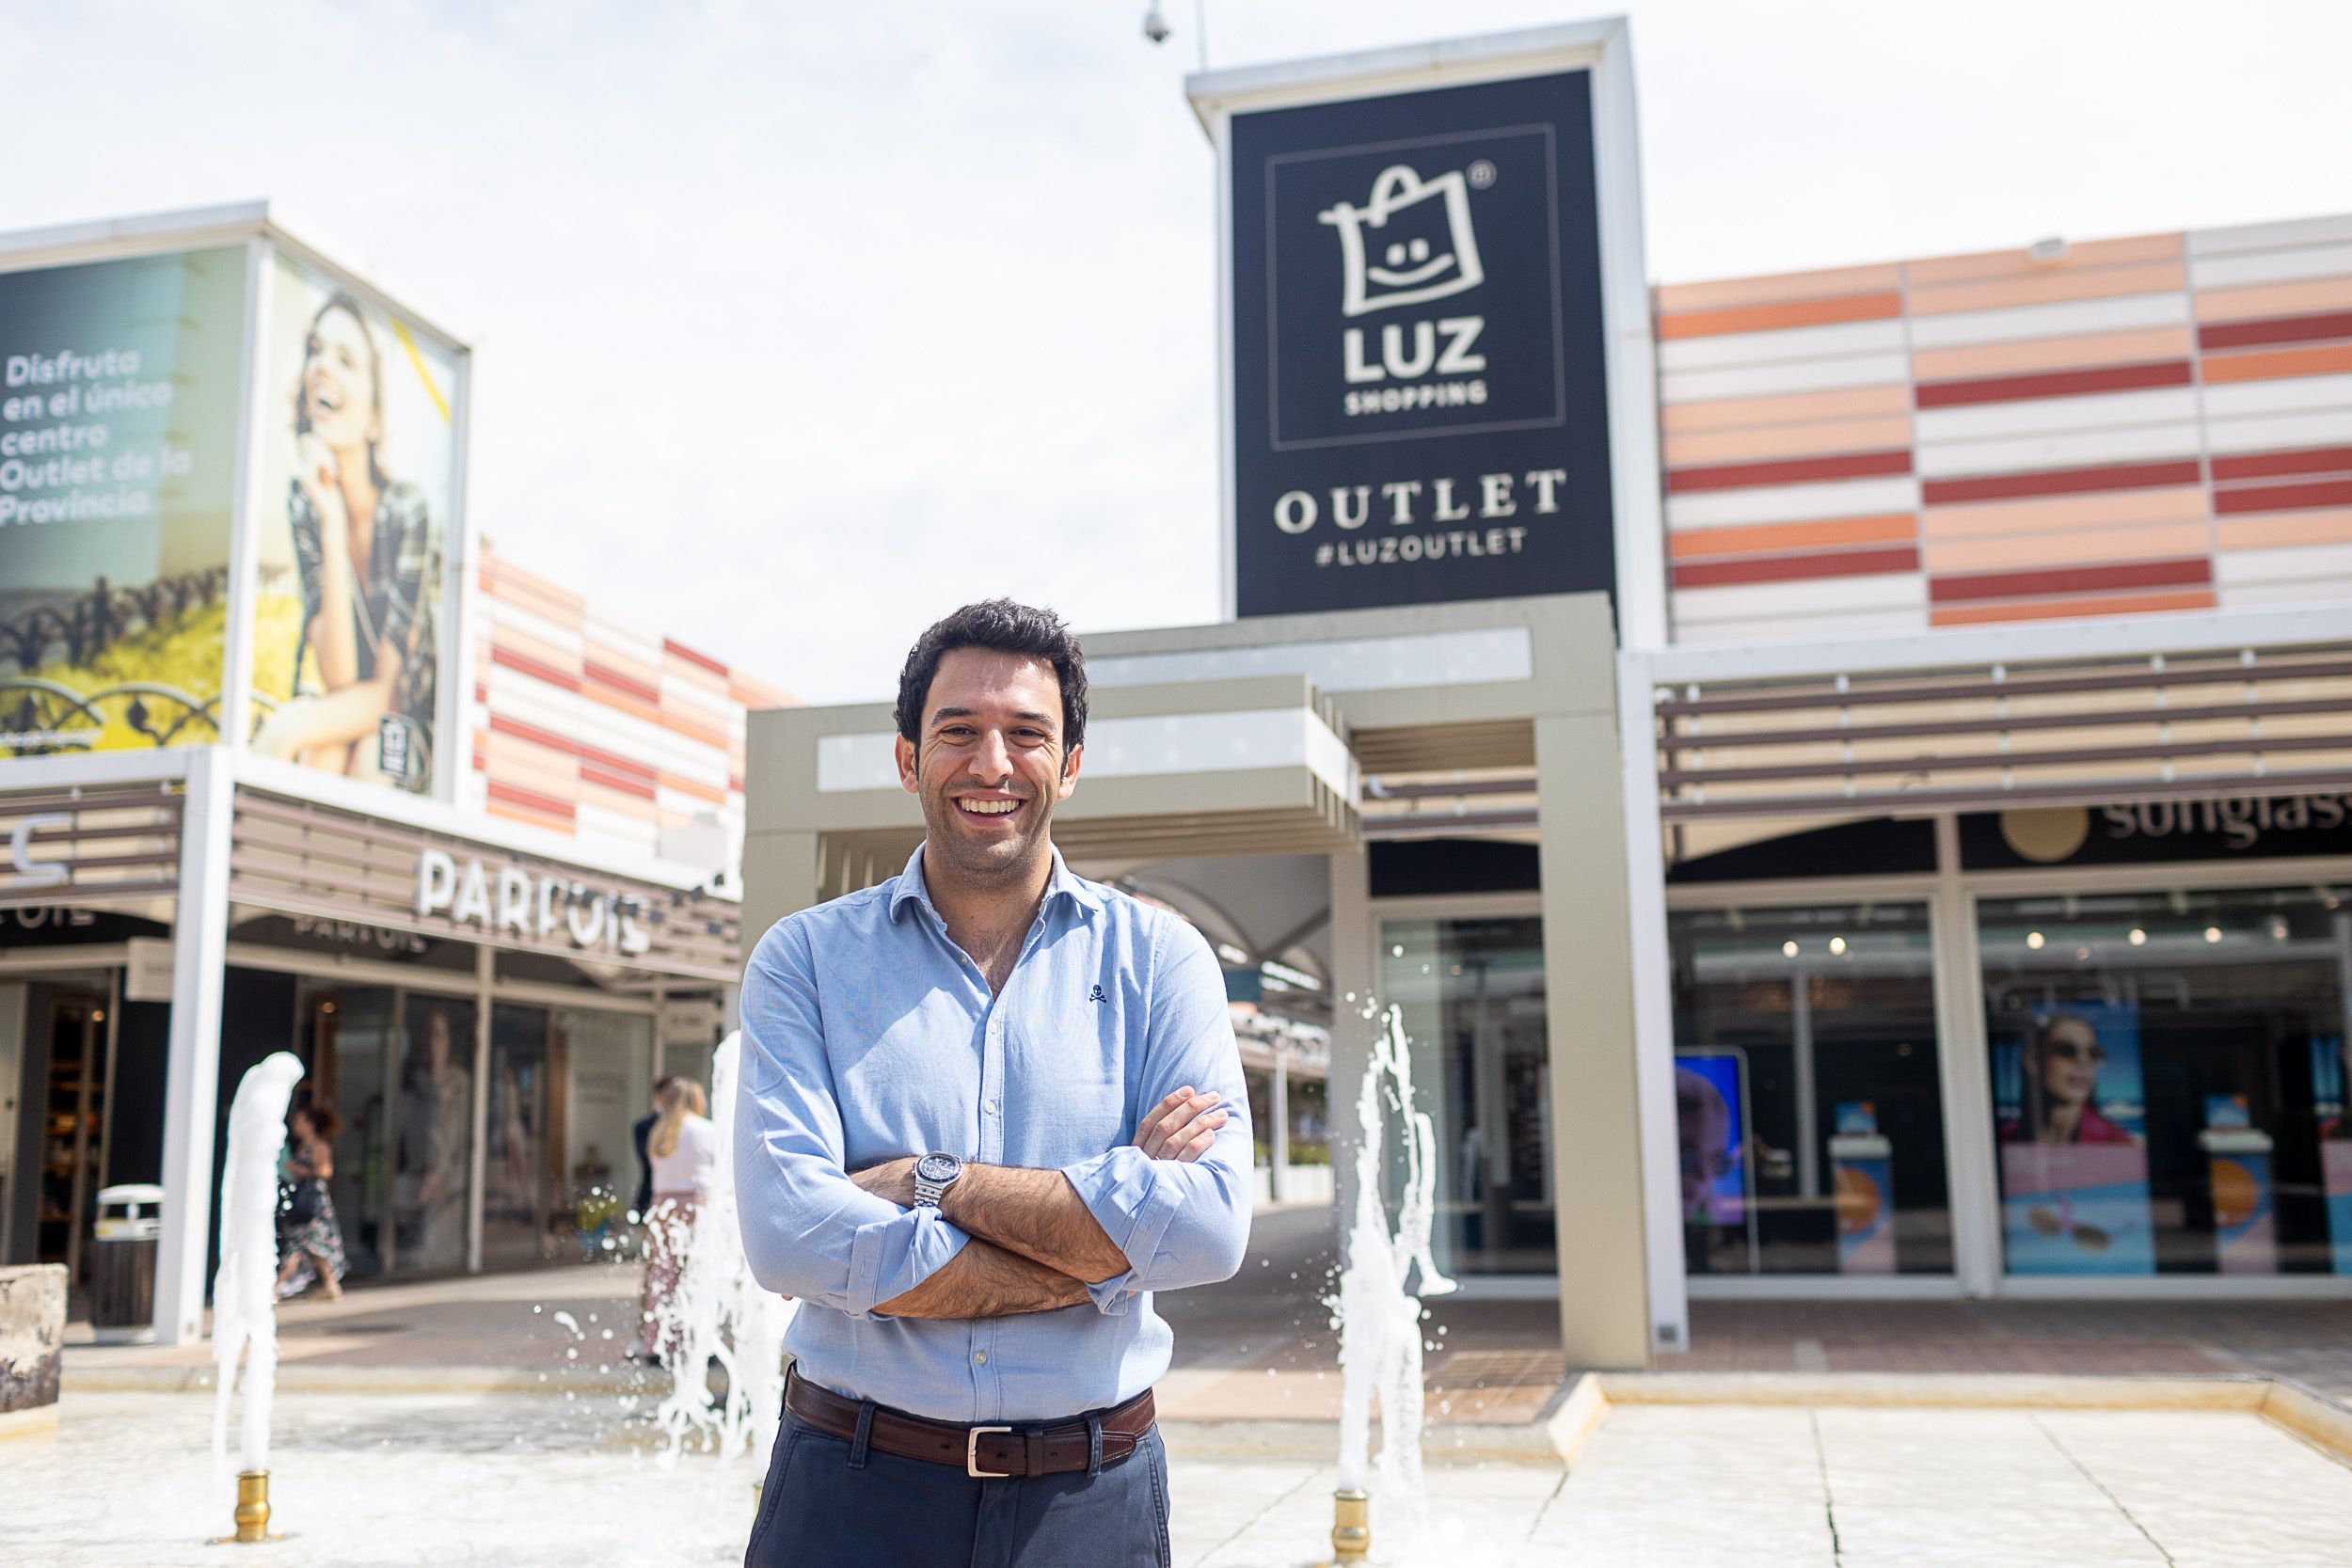 Antonio Íñigo, director de Luz Shopping, en la zona 'outlet' del parque comercial jerezano, en una imagen reciente.